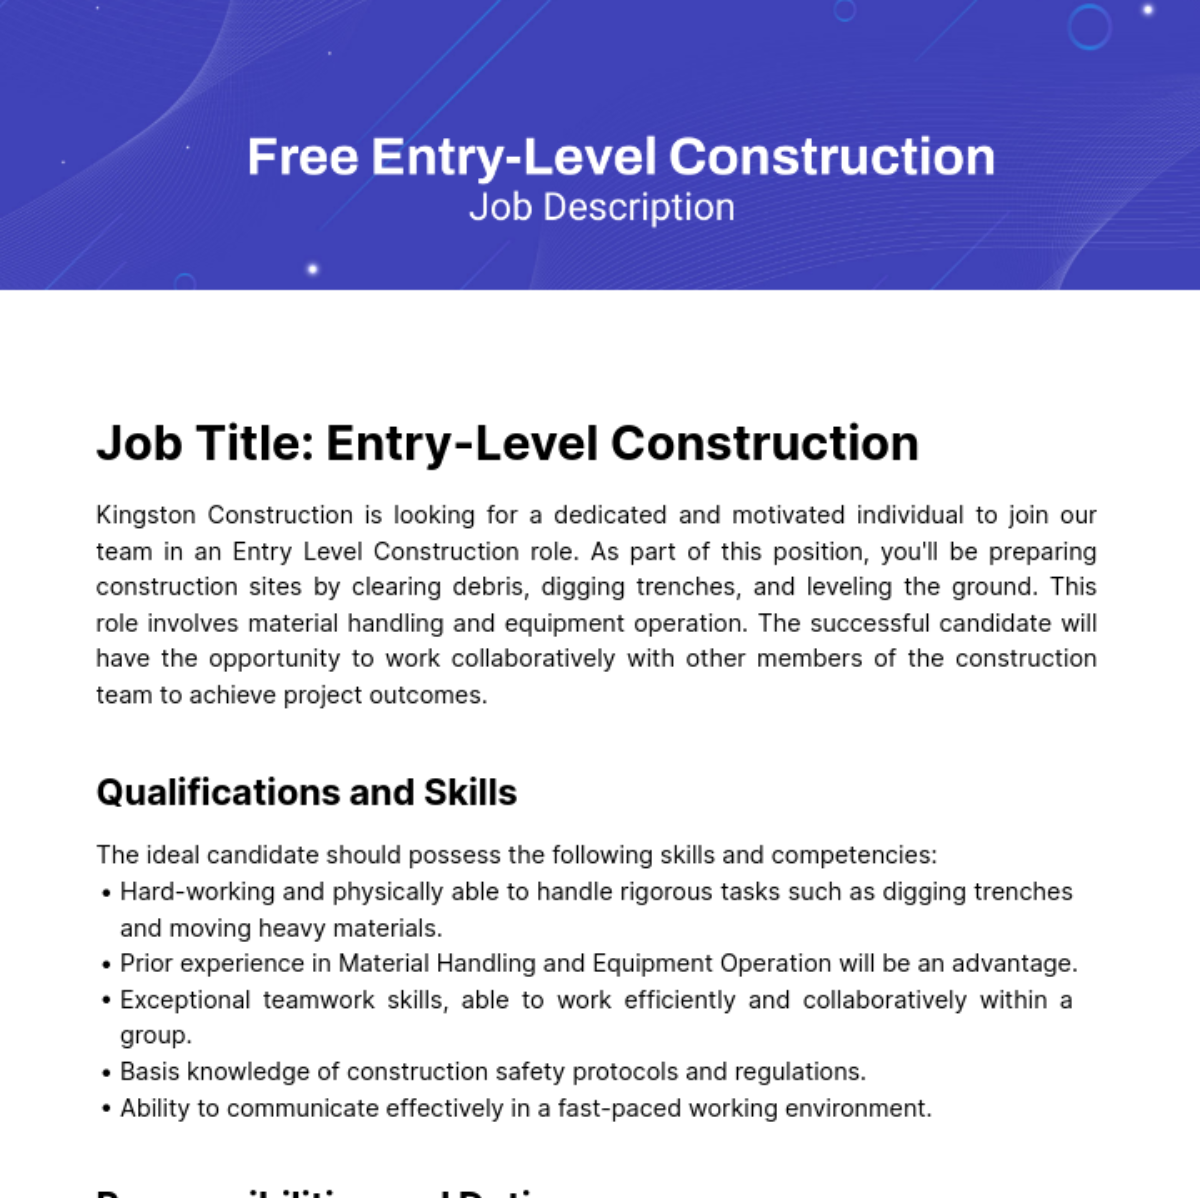 Free Entry Level Construction Job Description Template